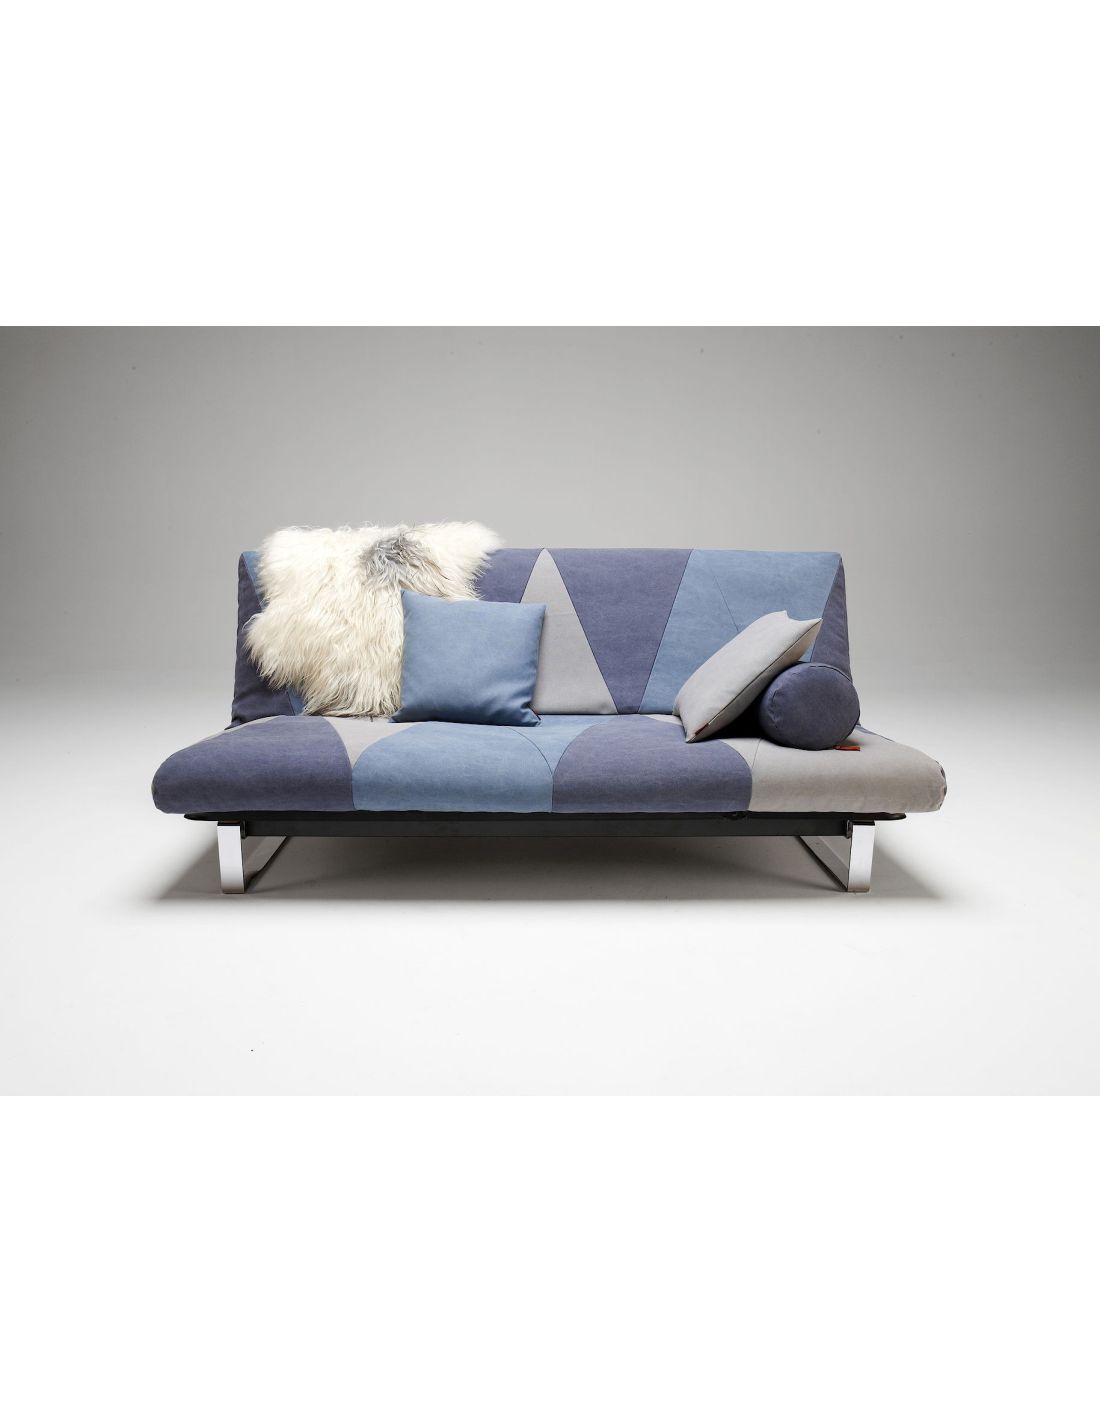 Divano letto design scandinavo sfoderabile cozy gem for Divano letto design